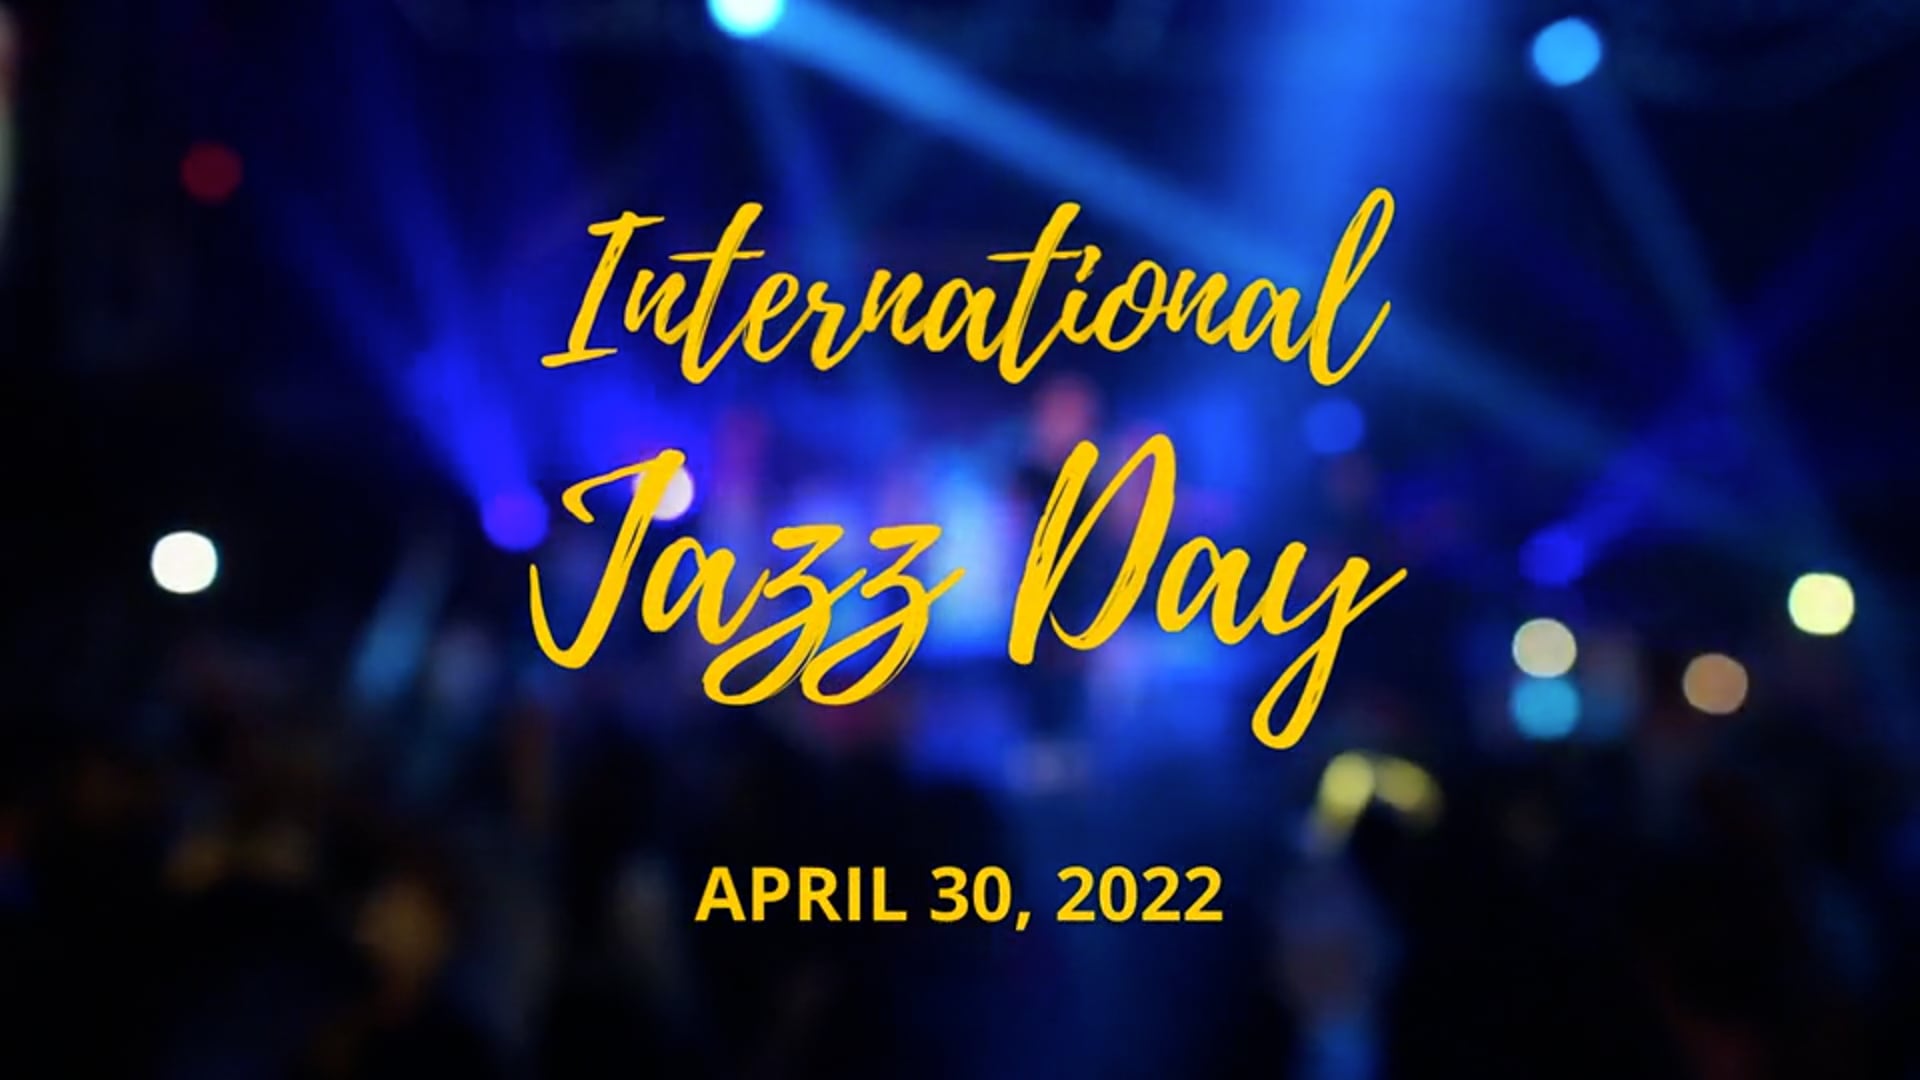 International Jazz Day